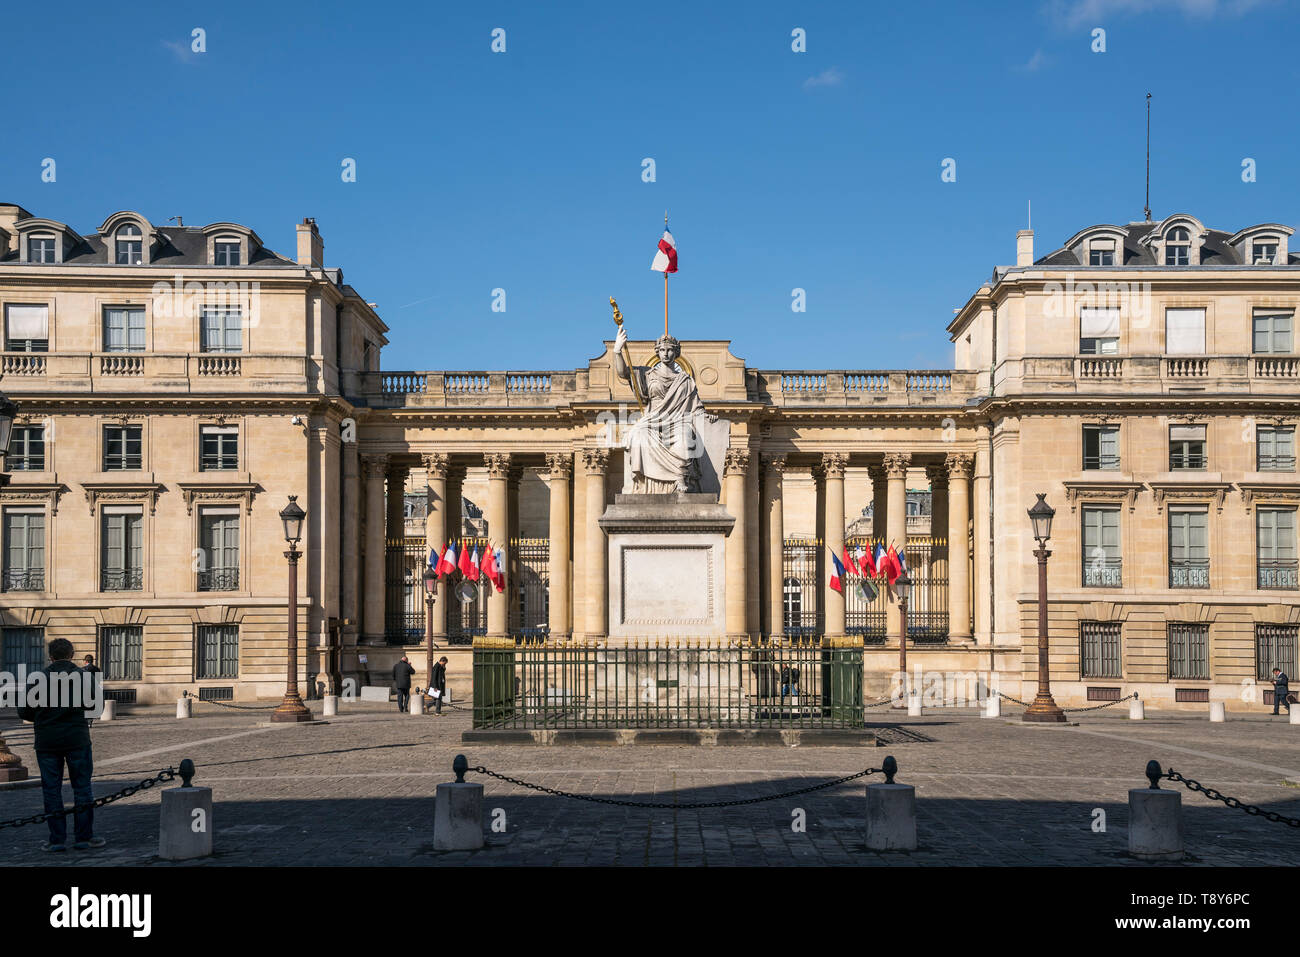 Sitz der französischen Nationalversammlung Palais Bourbon, Paris, Frankreich  |  seat of the French National Assembly Palais Bourbon, Paris, France Stock Photo